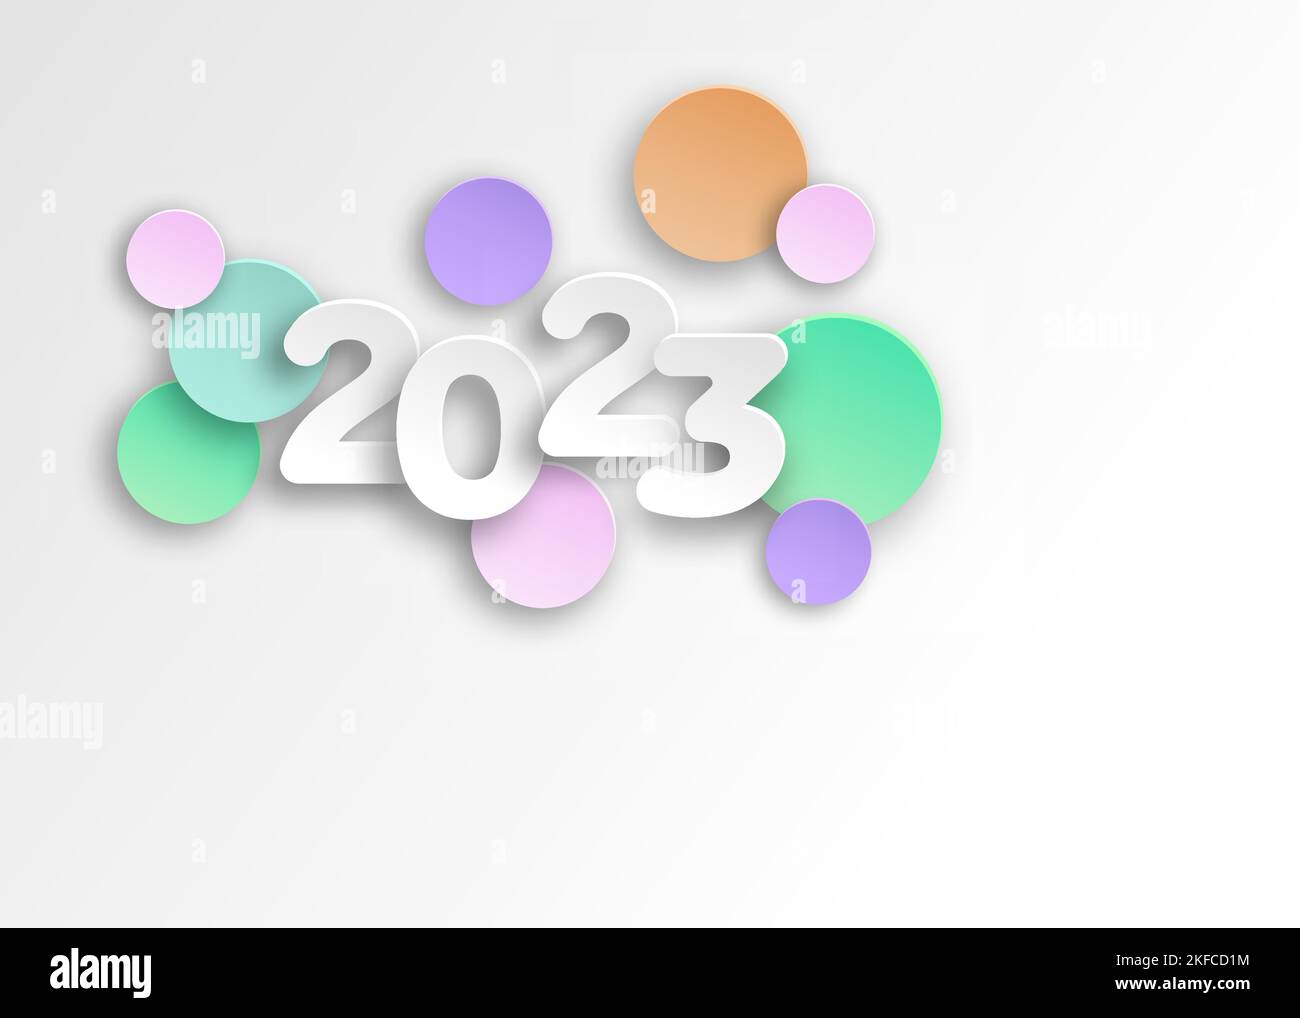 Neues Jahr 2023 Papier schneiden Zahlen in zarten Farben. Dekorative Grußkarte 2023 Frohes neues Jahr. Farbenfrohes Weihnachtsbanner, Vektorgrafik Stock Vektor